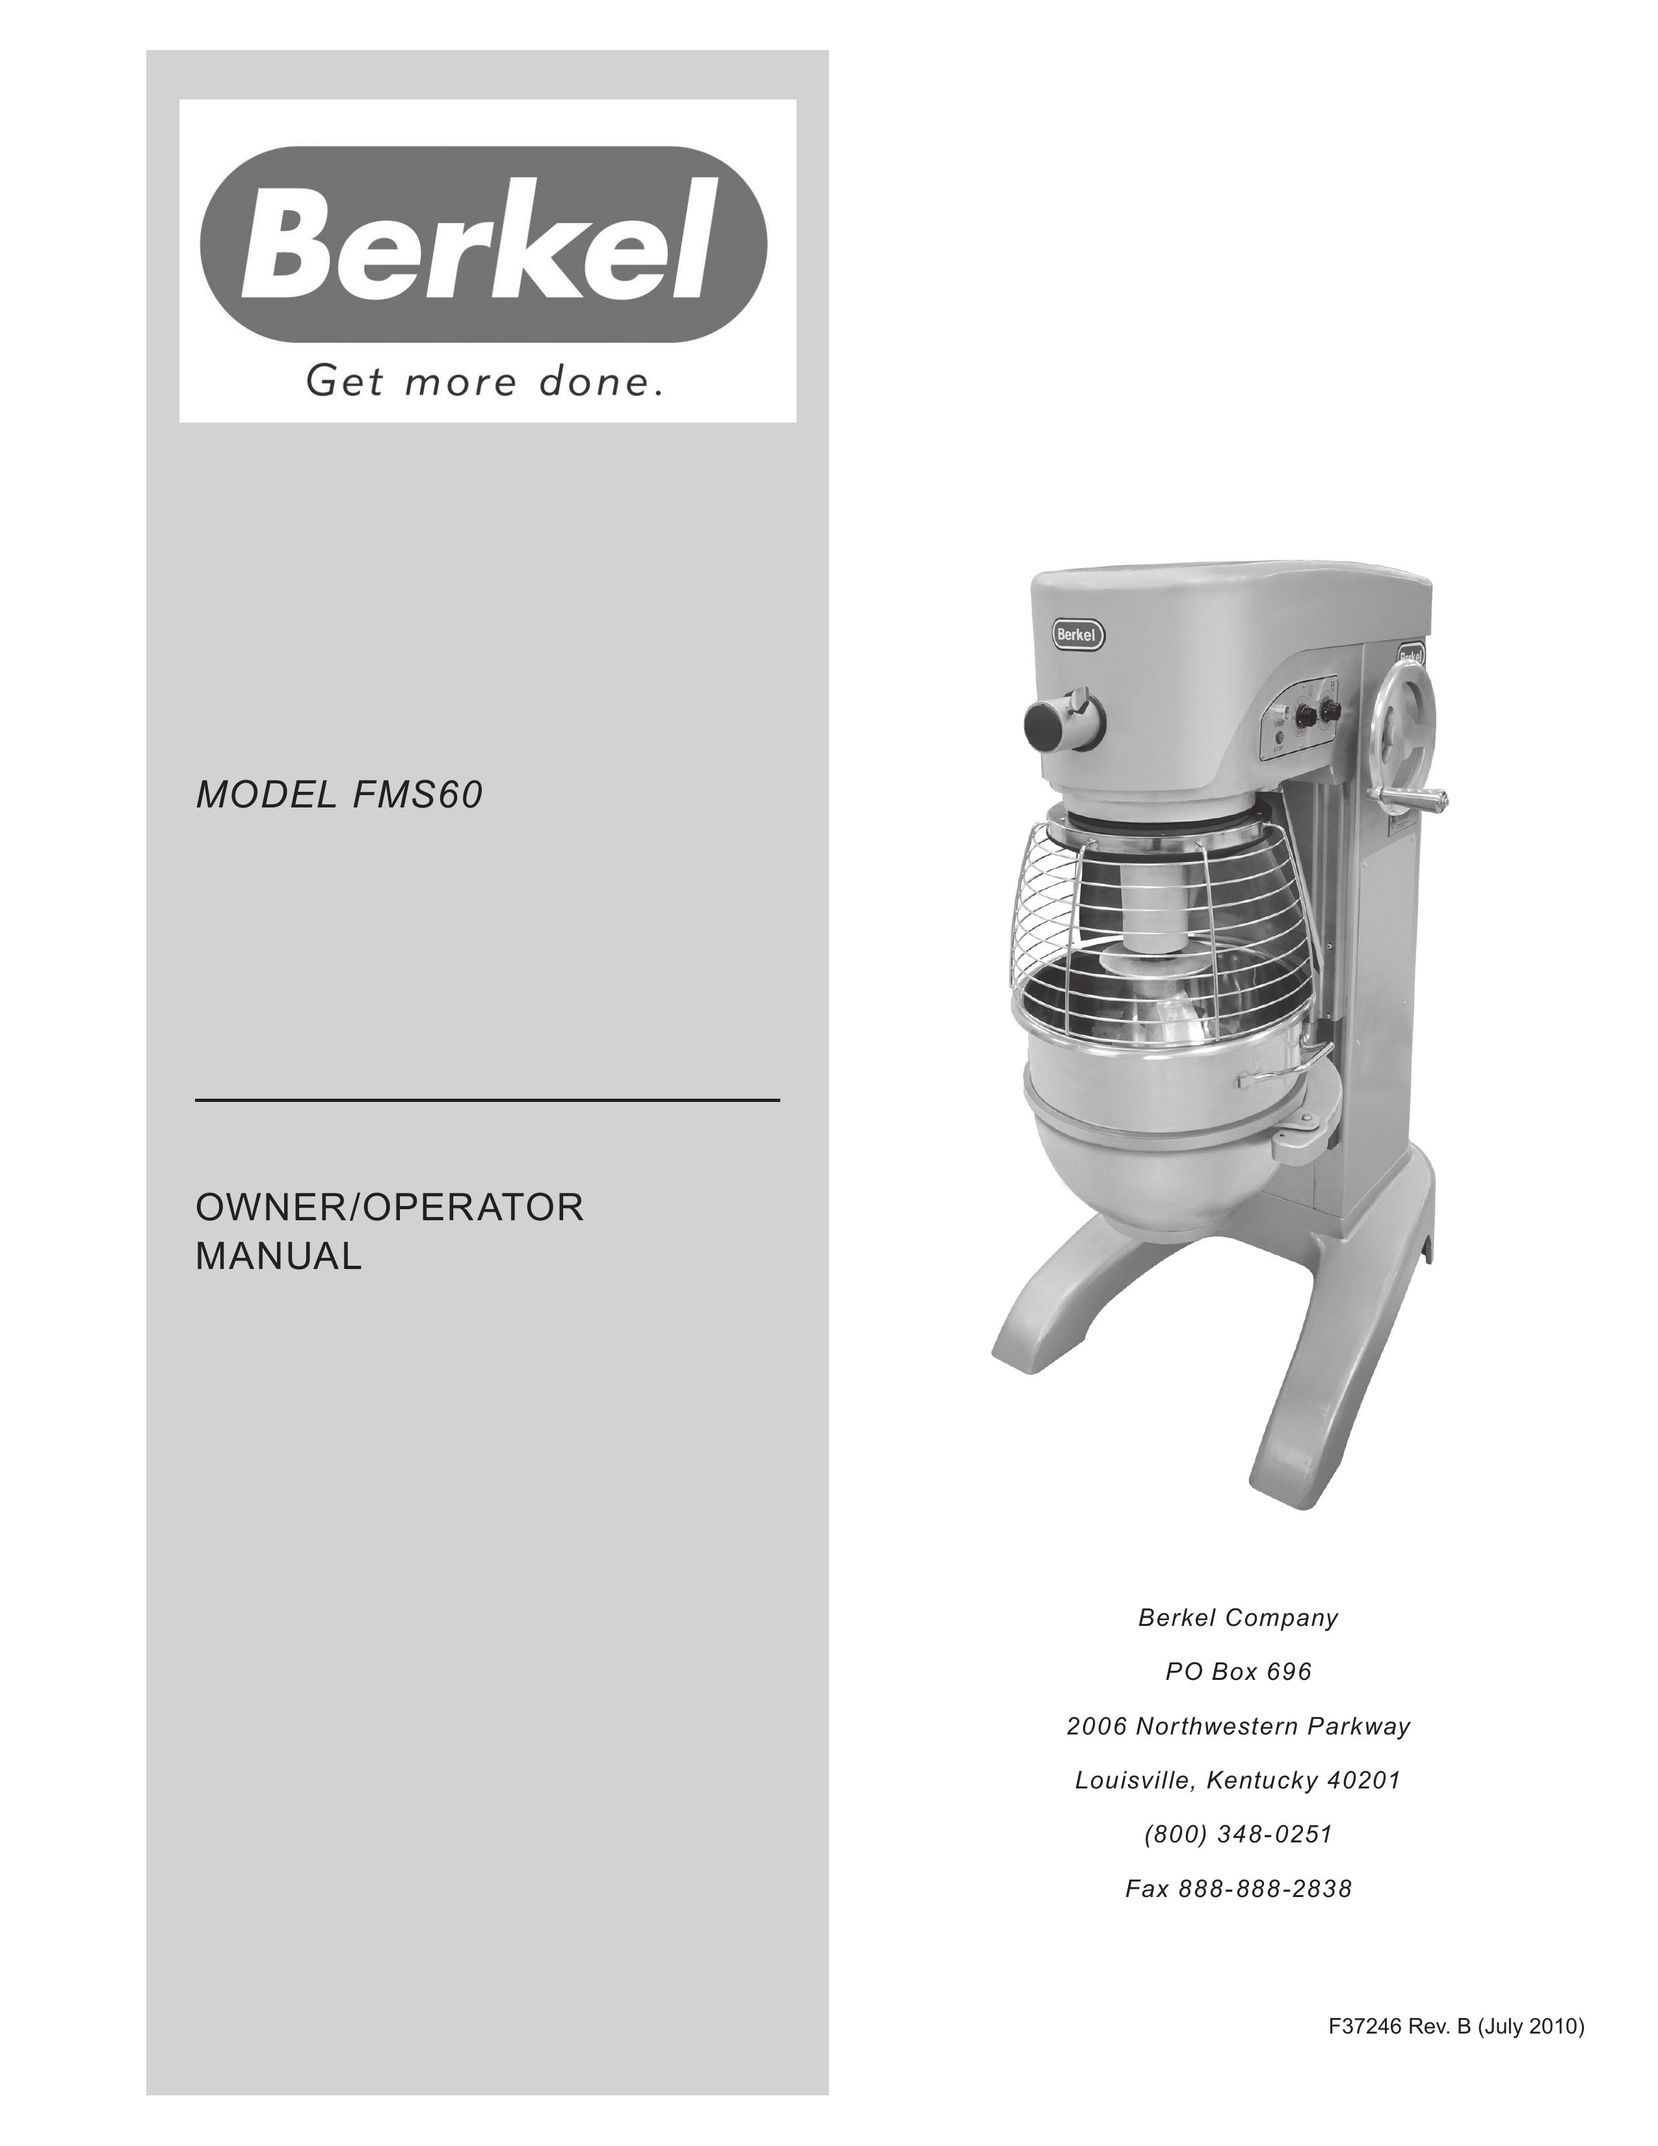 Berkel FMS60 Mixer User Manual